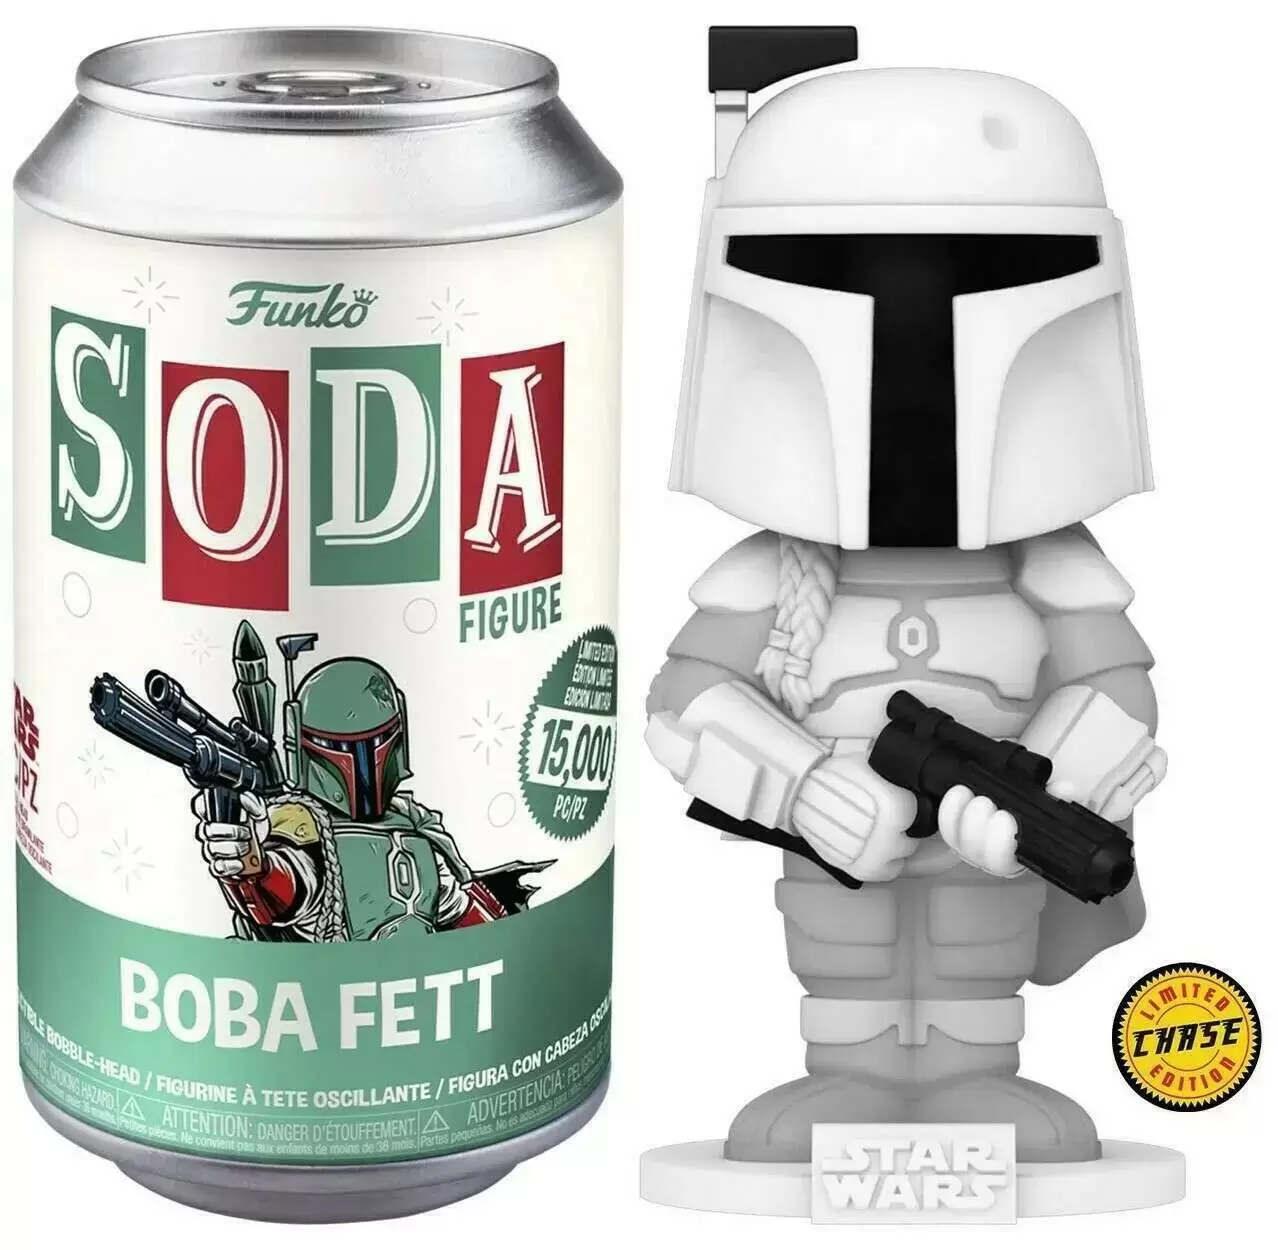 Vinyl Soda! - Star Wars - Boba Fett Chase